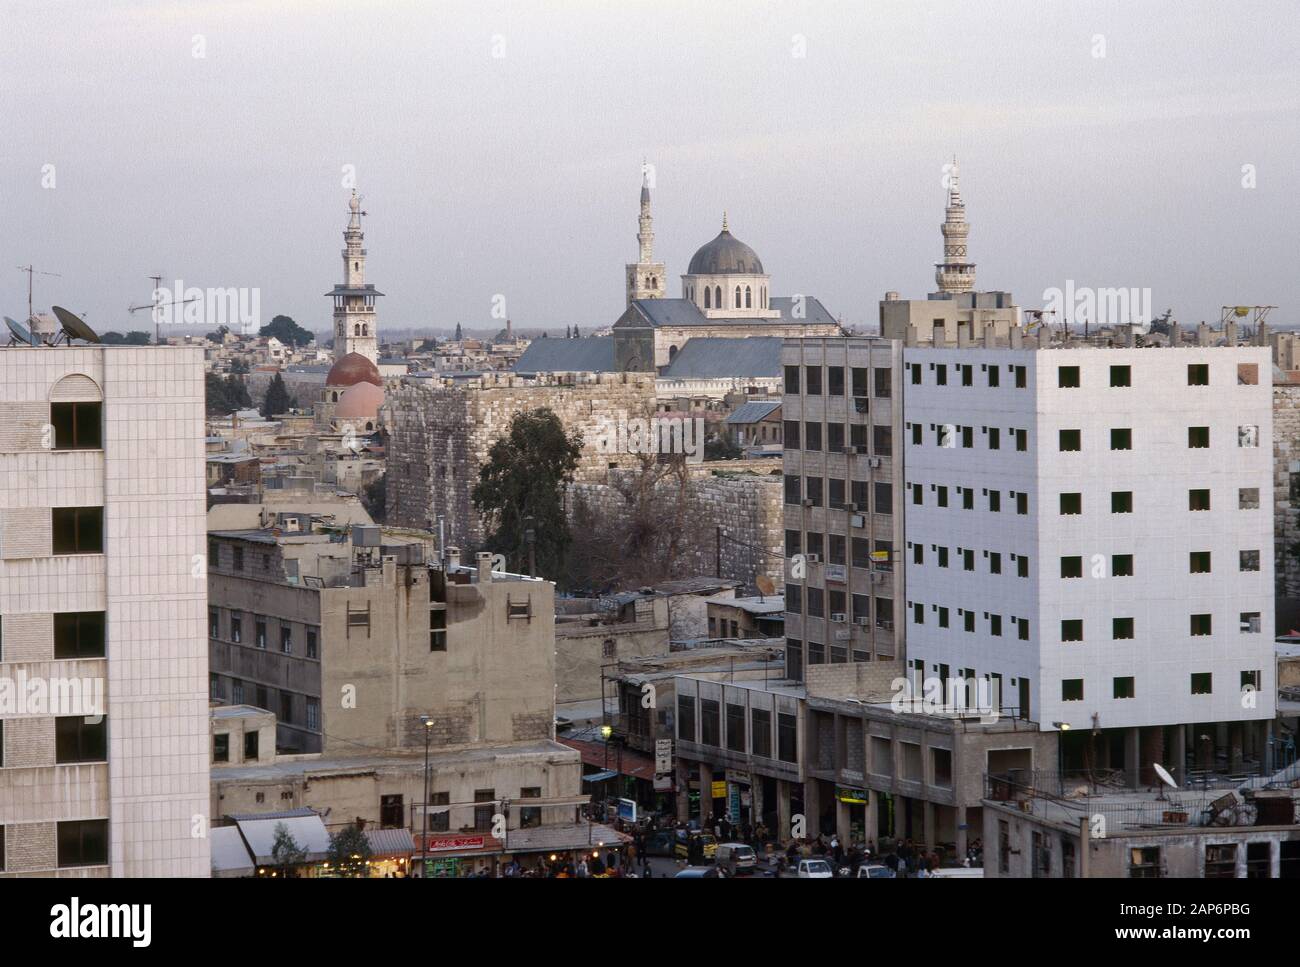 Arabische Republik Syrien. Damaskus. Aspekt der Stadt bei Sonnenuntergang. Foto vor dem syrischen Bürgerkrieg. Stockfoto